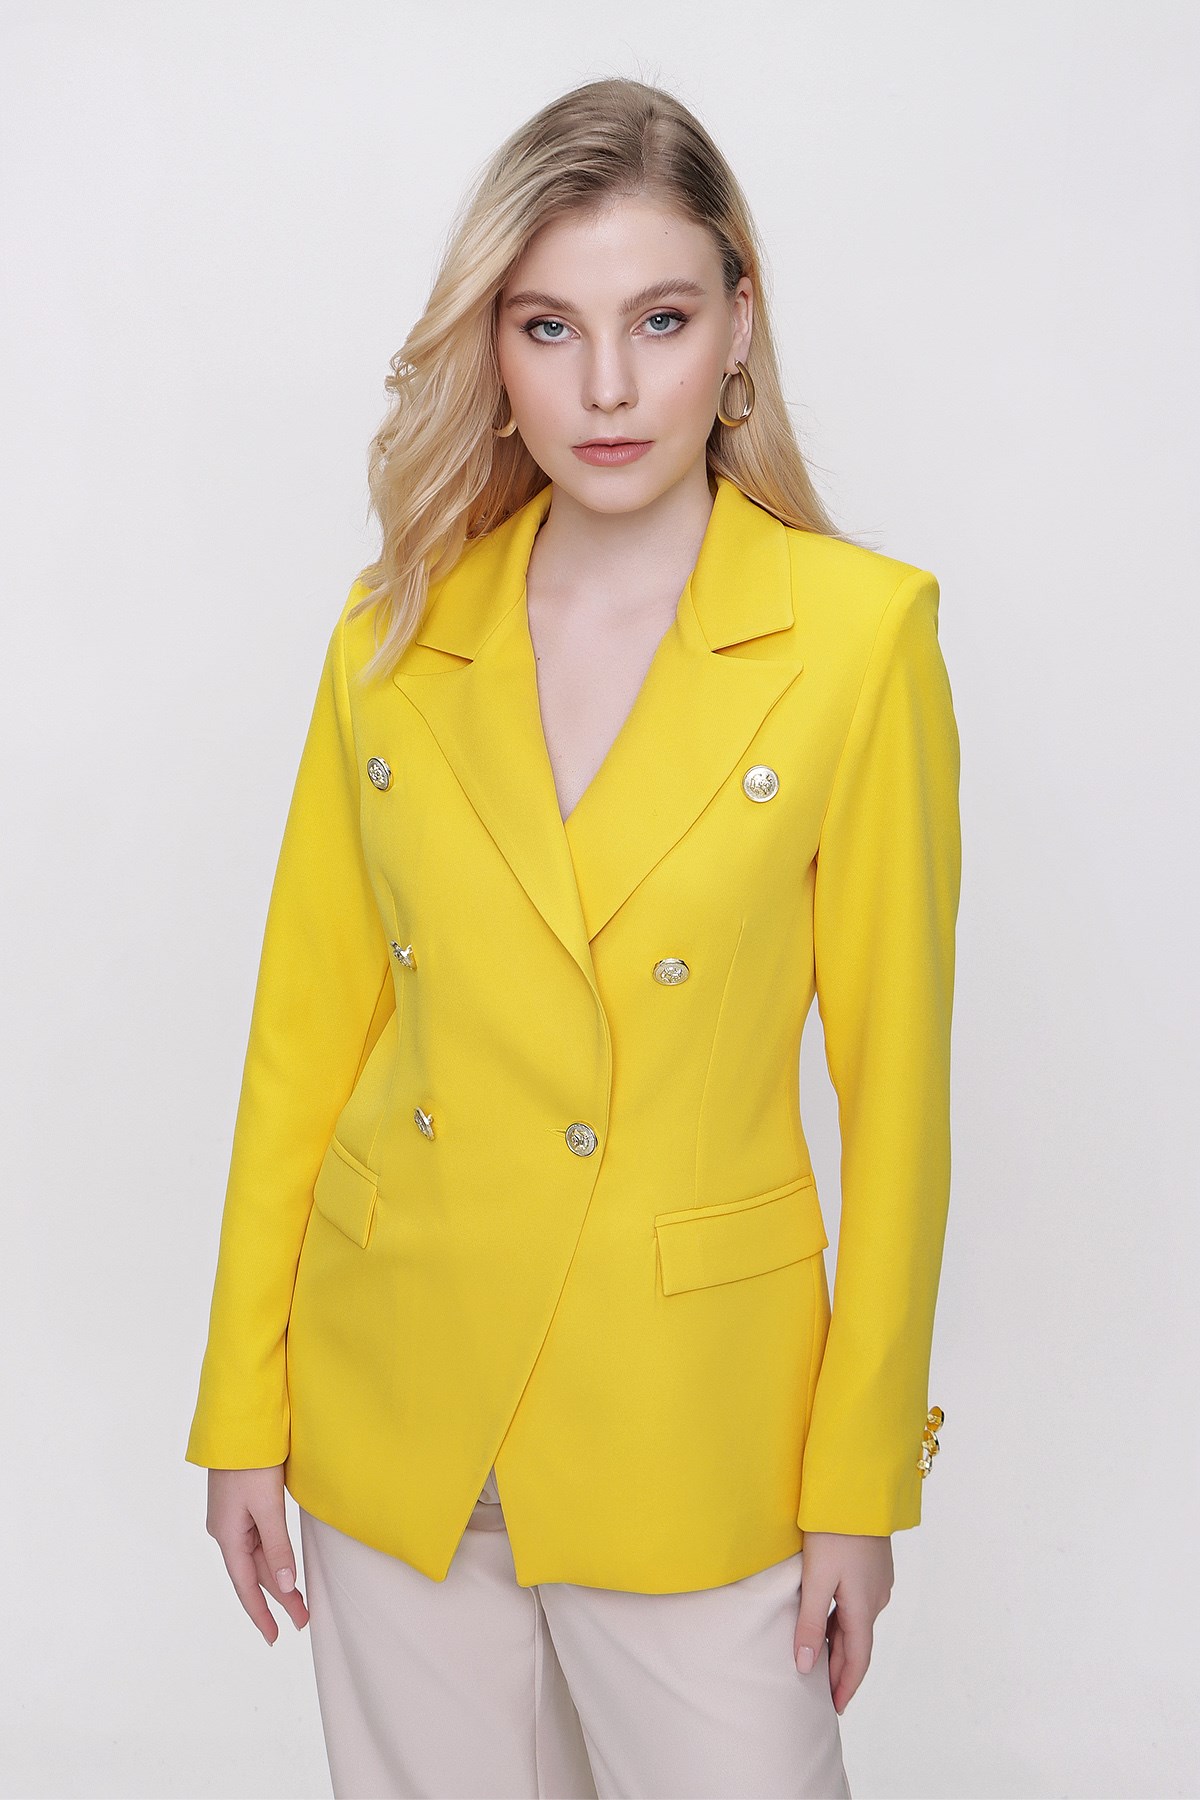 Kadın Sarı Kruvaze Yaka Blazer Ceket - Butik Buruç